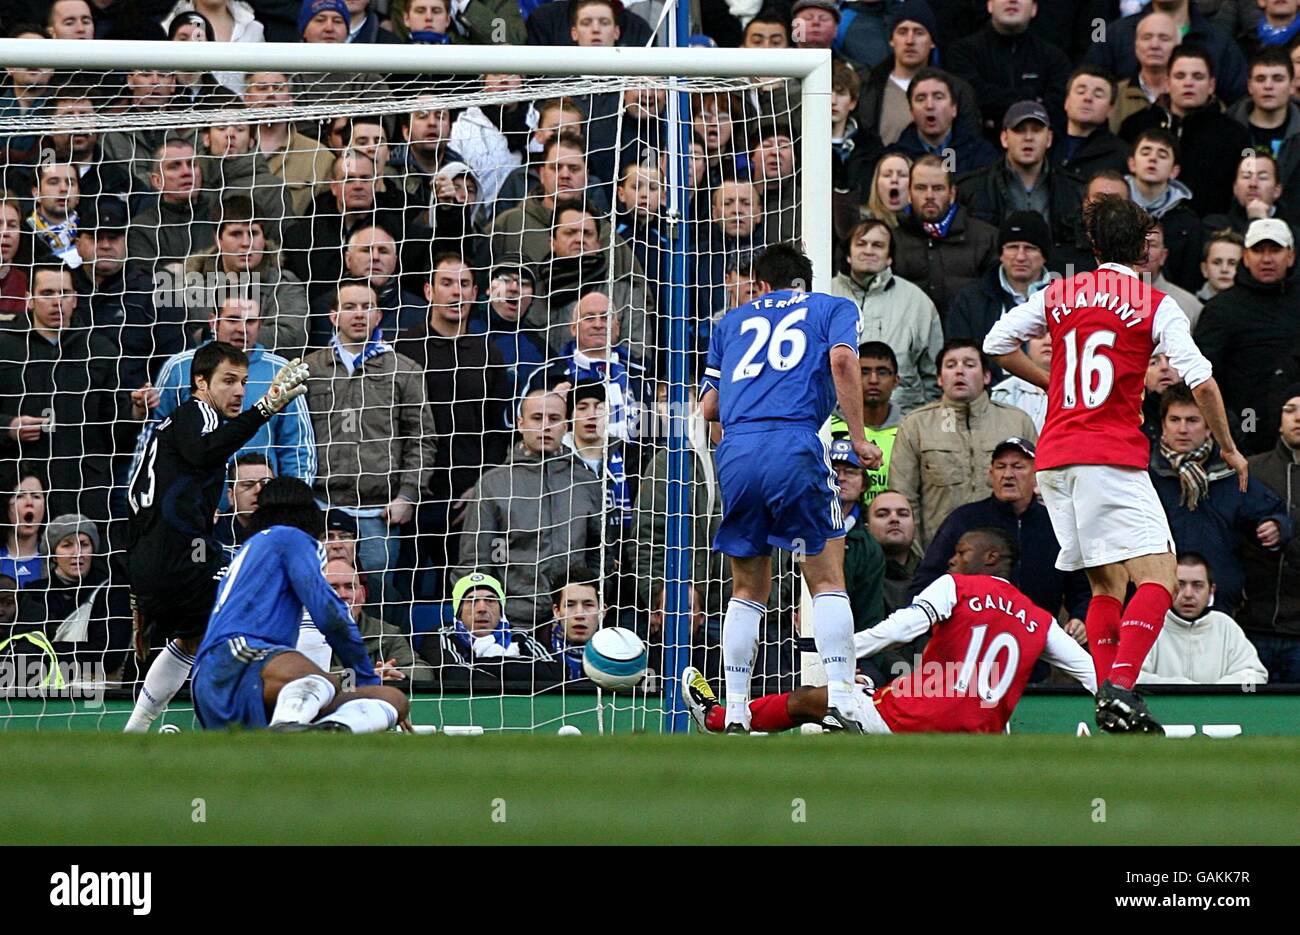 Fútbol - Barclays Premier League - Chelsea contra Arsenal - Stamford Bridge. William Gallas, del Arsenal, llega al puesto Foto de stock